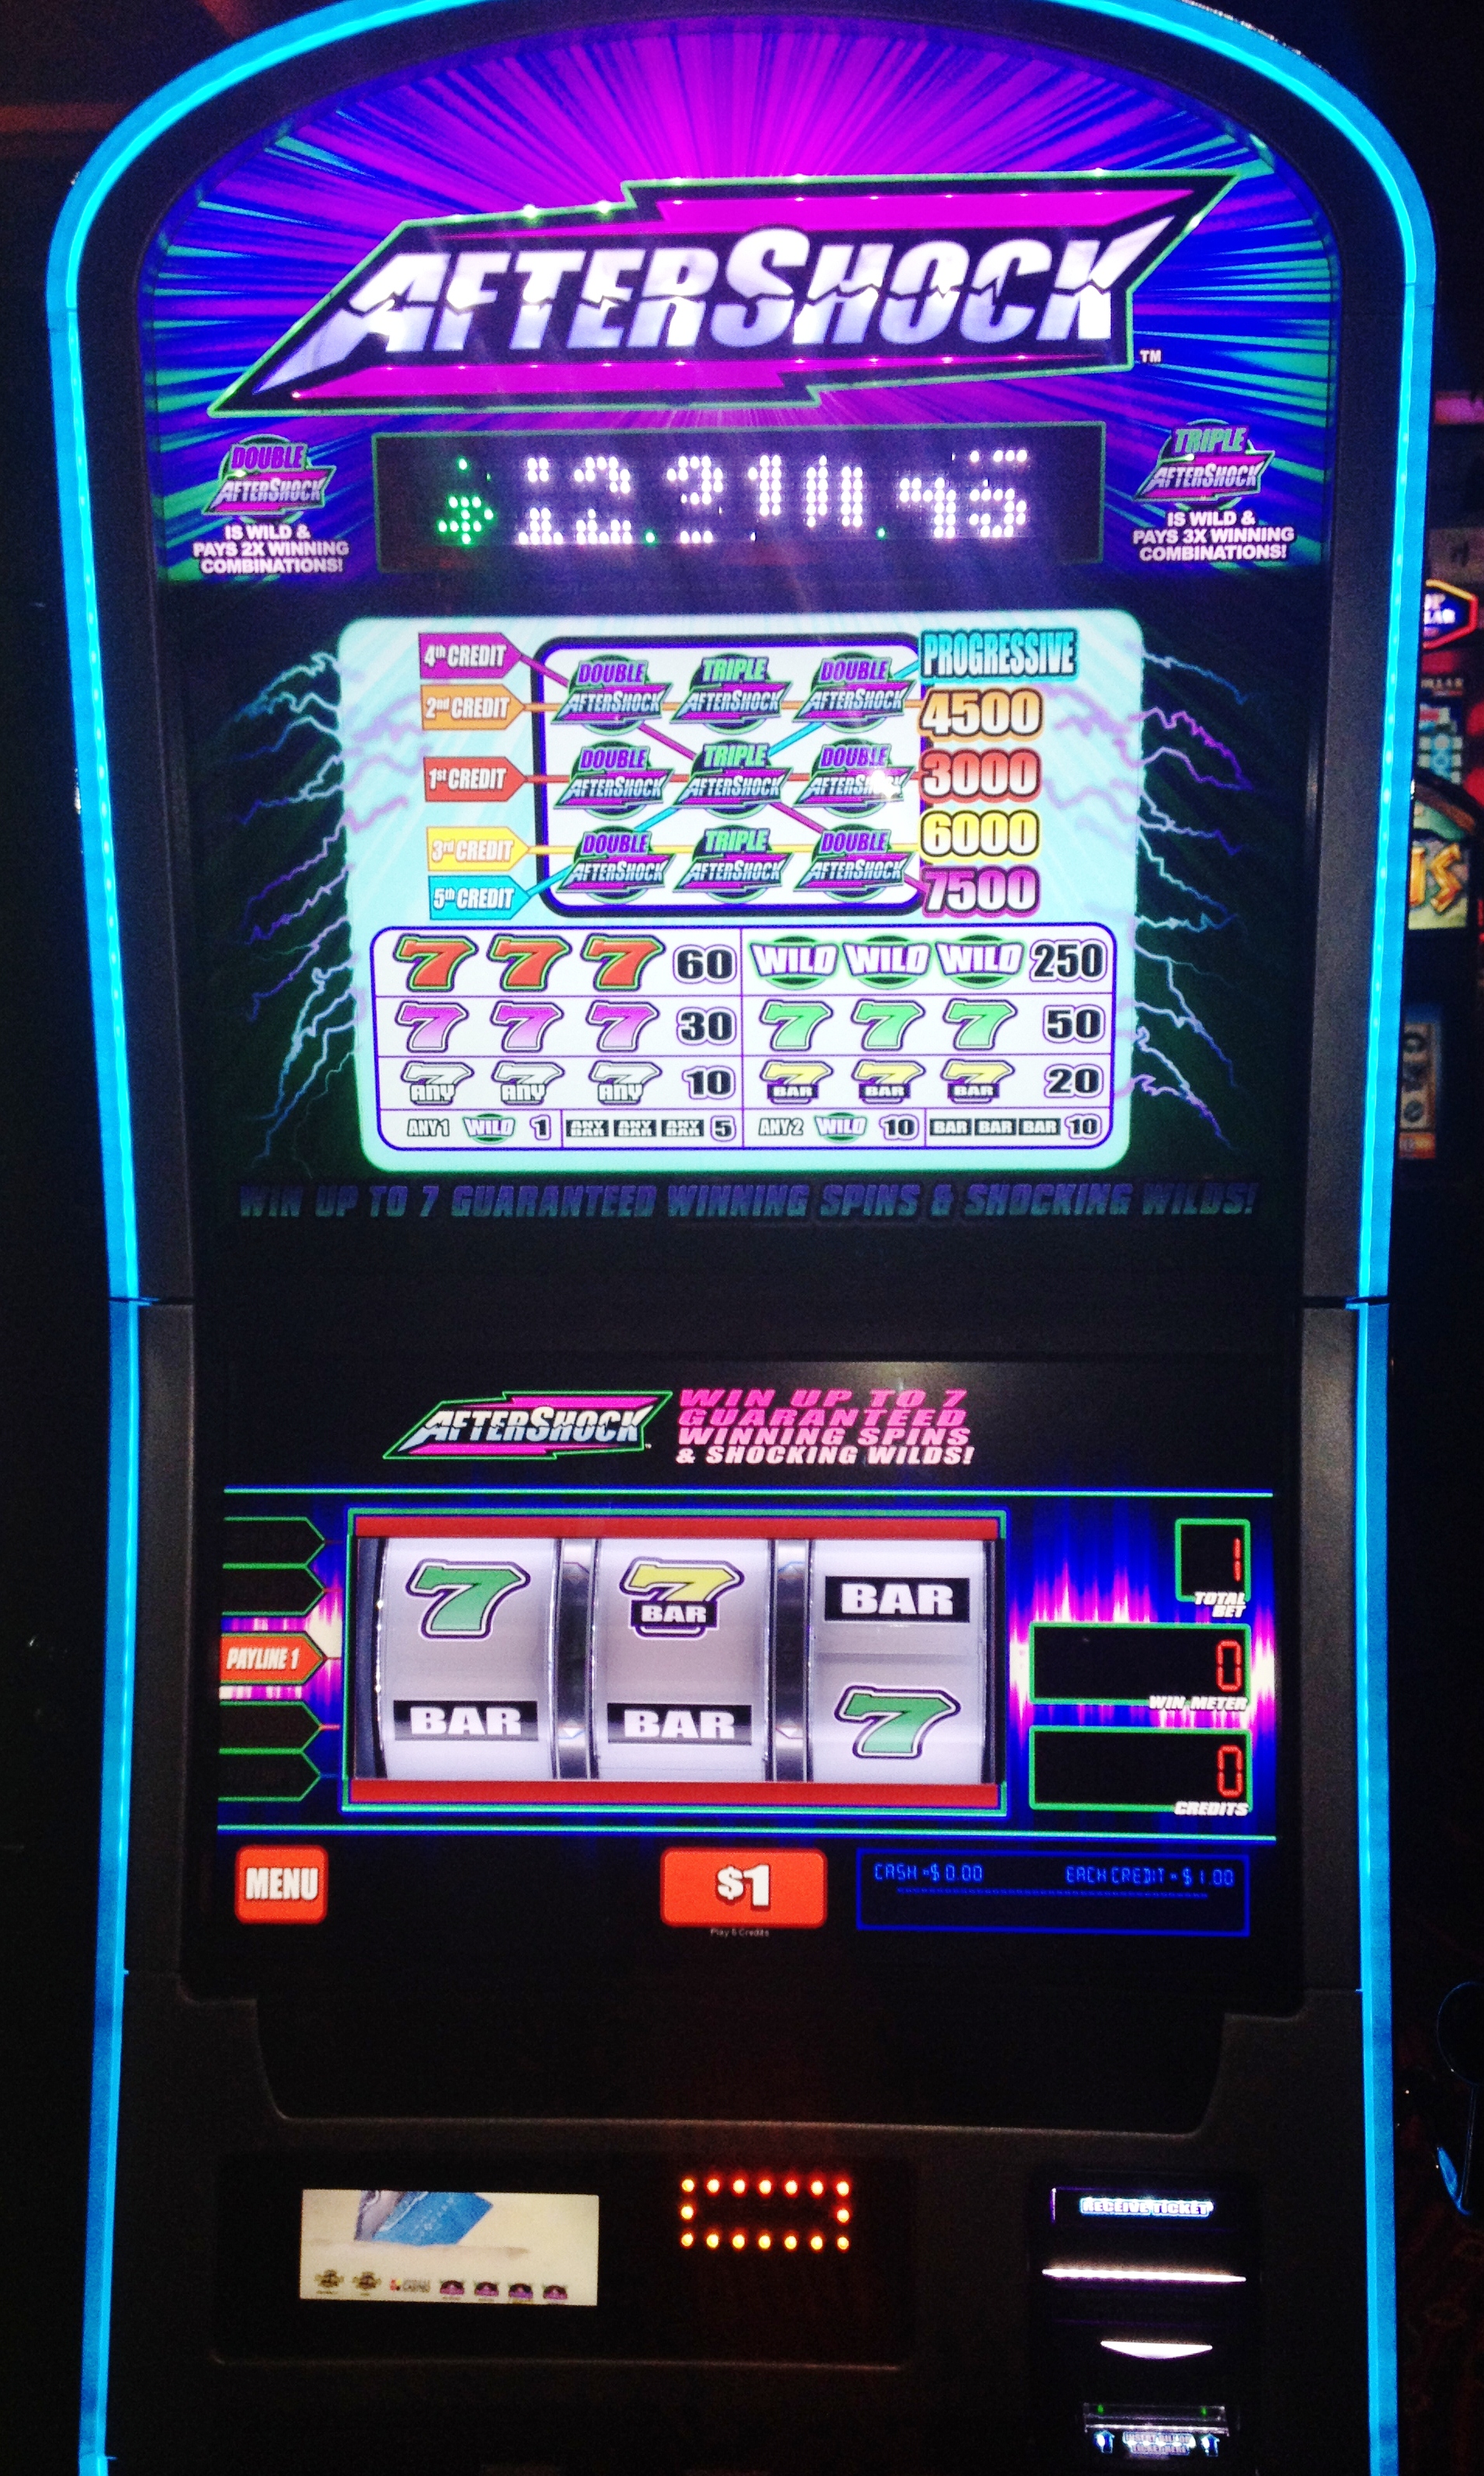 New wheel of fortune slot machine